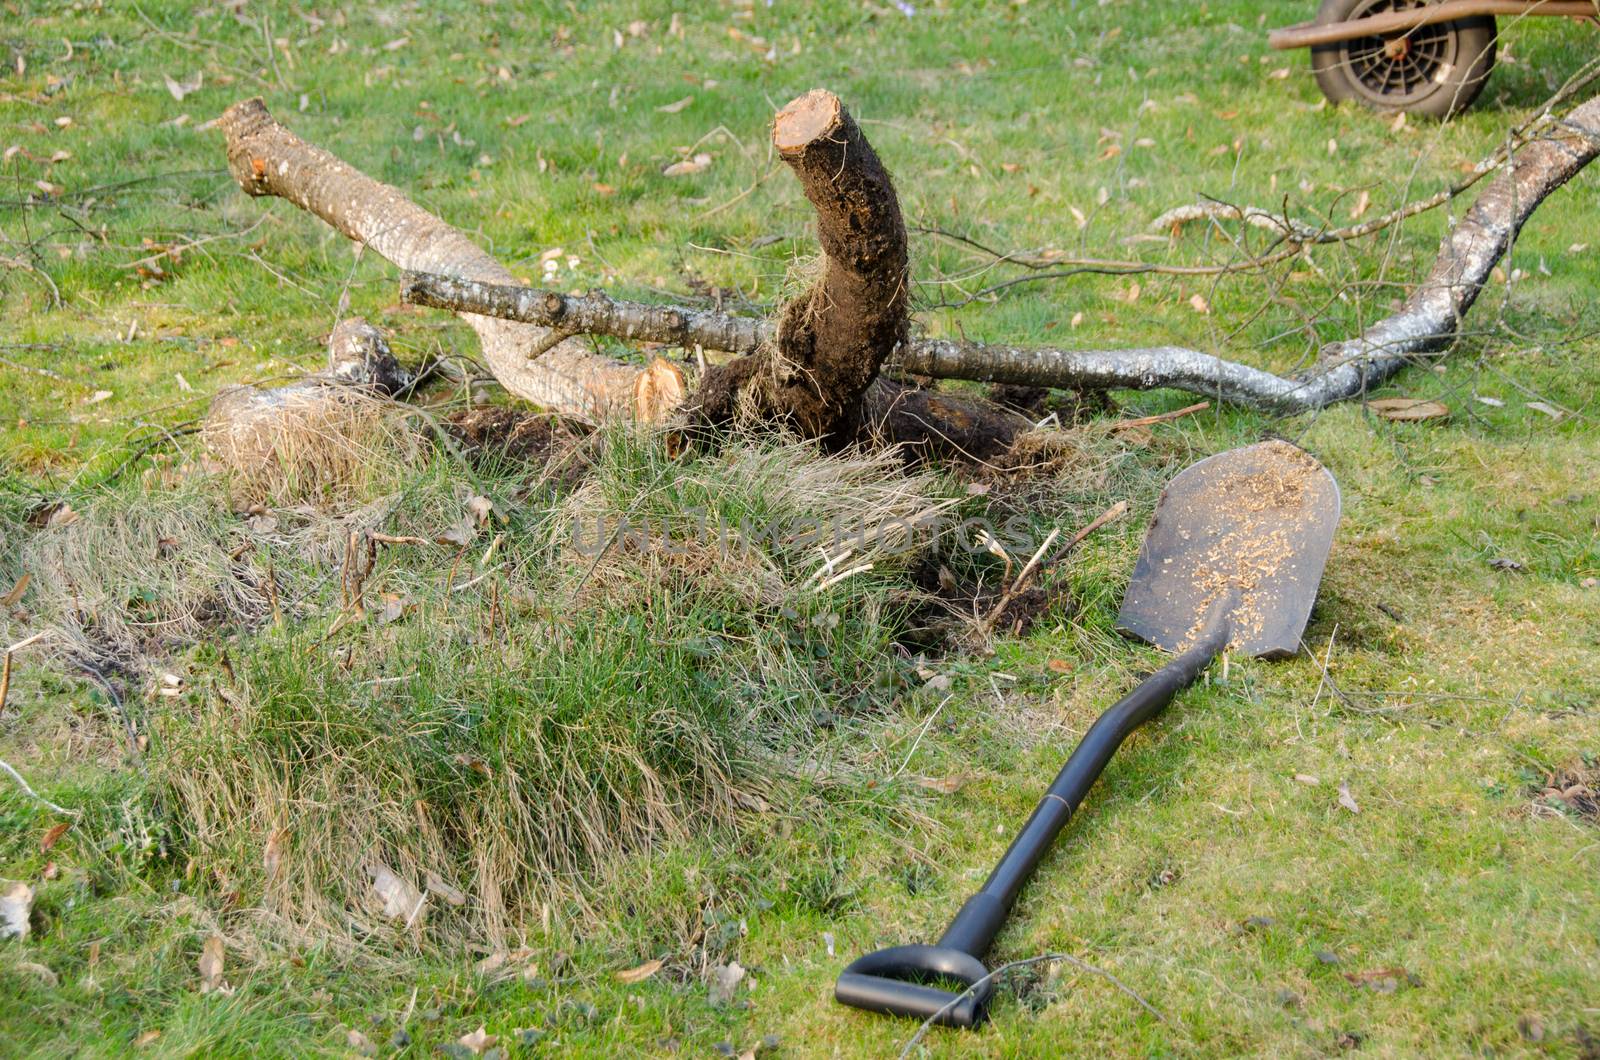 shovel lie in yard near cut branches, garden work by sauletas